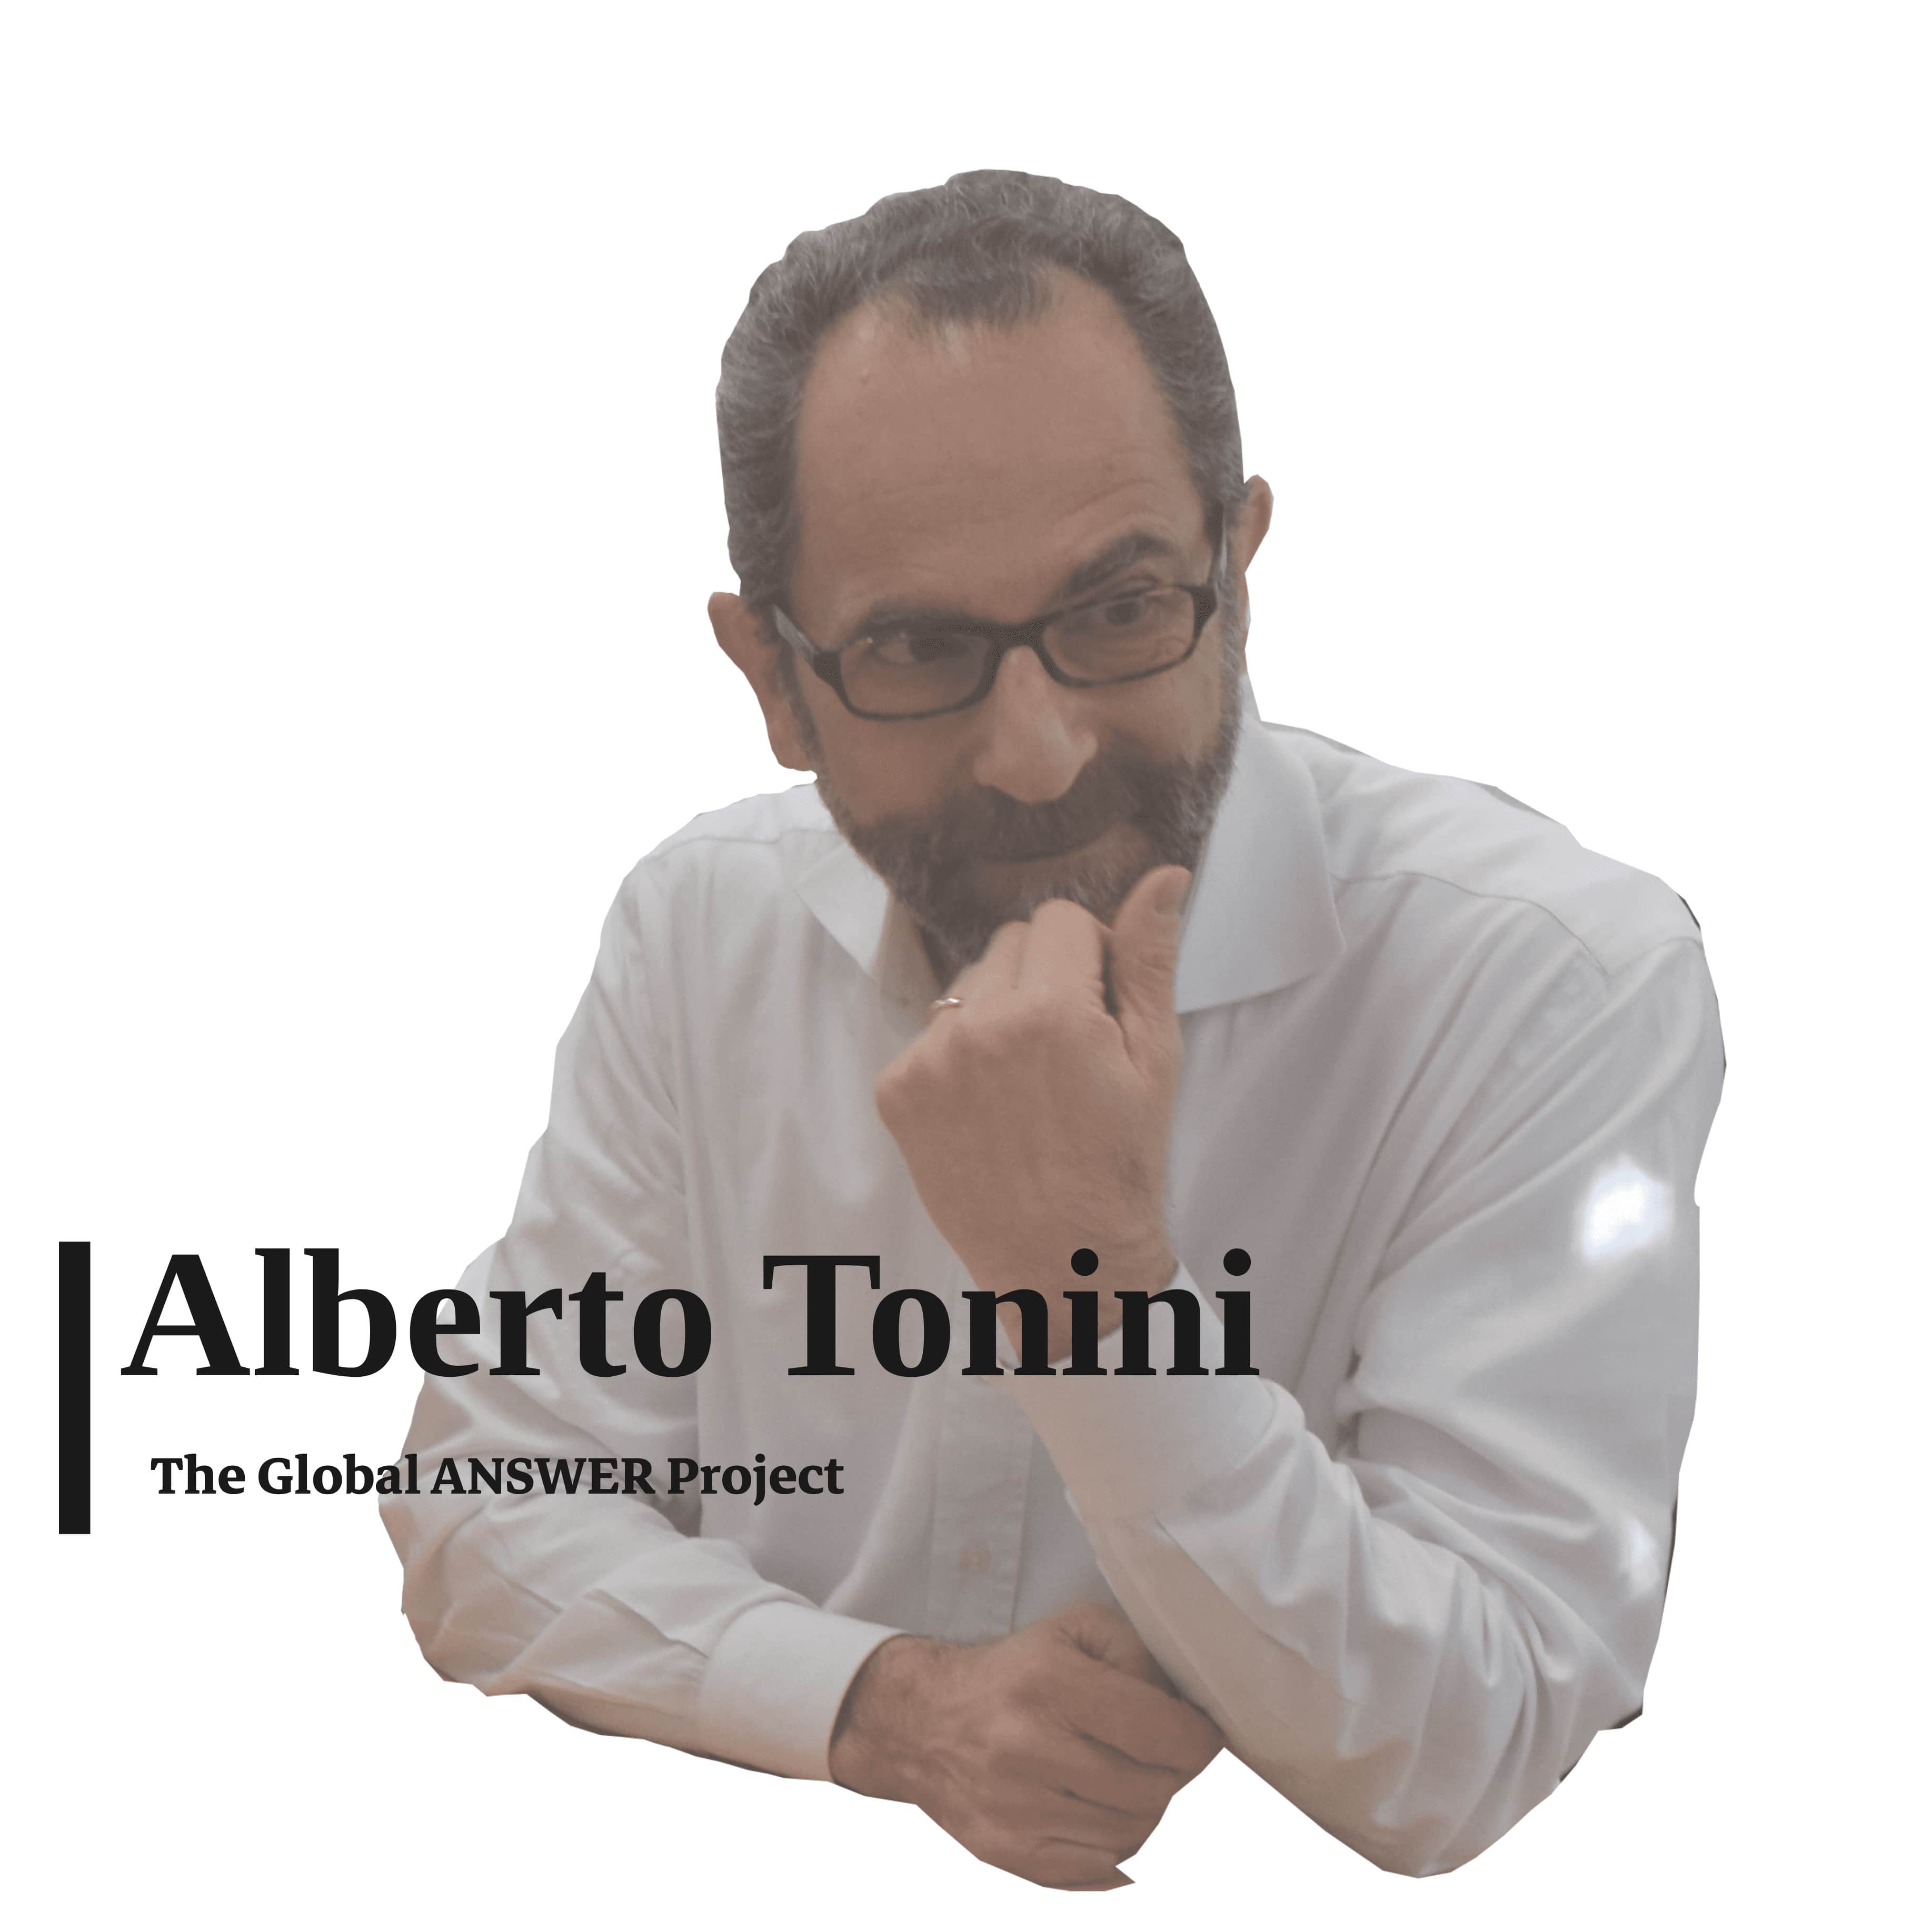 Alberto Tonini videos click on here